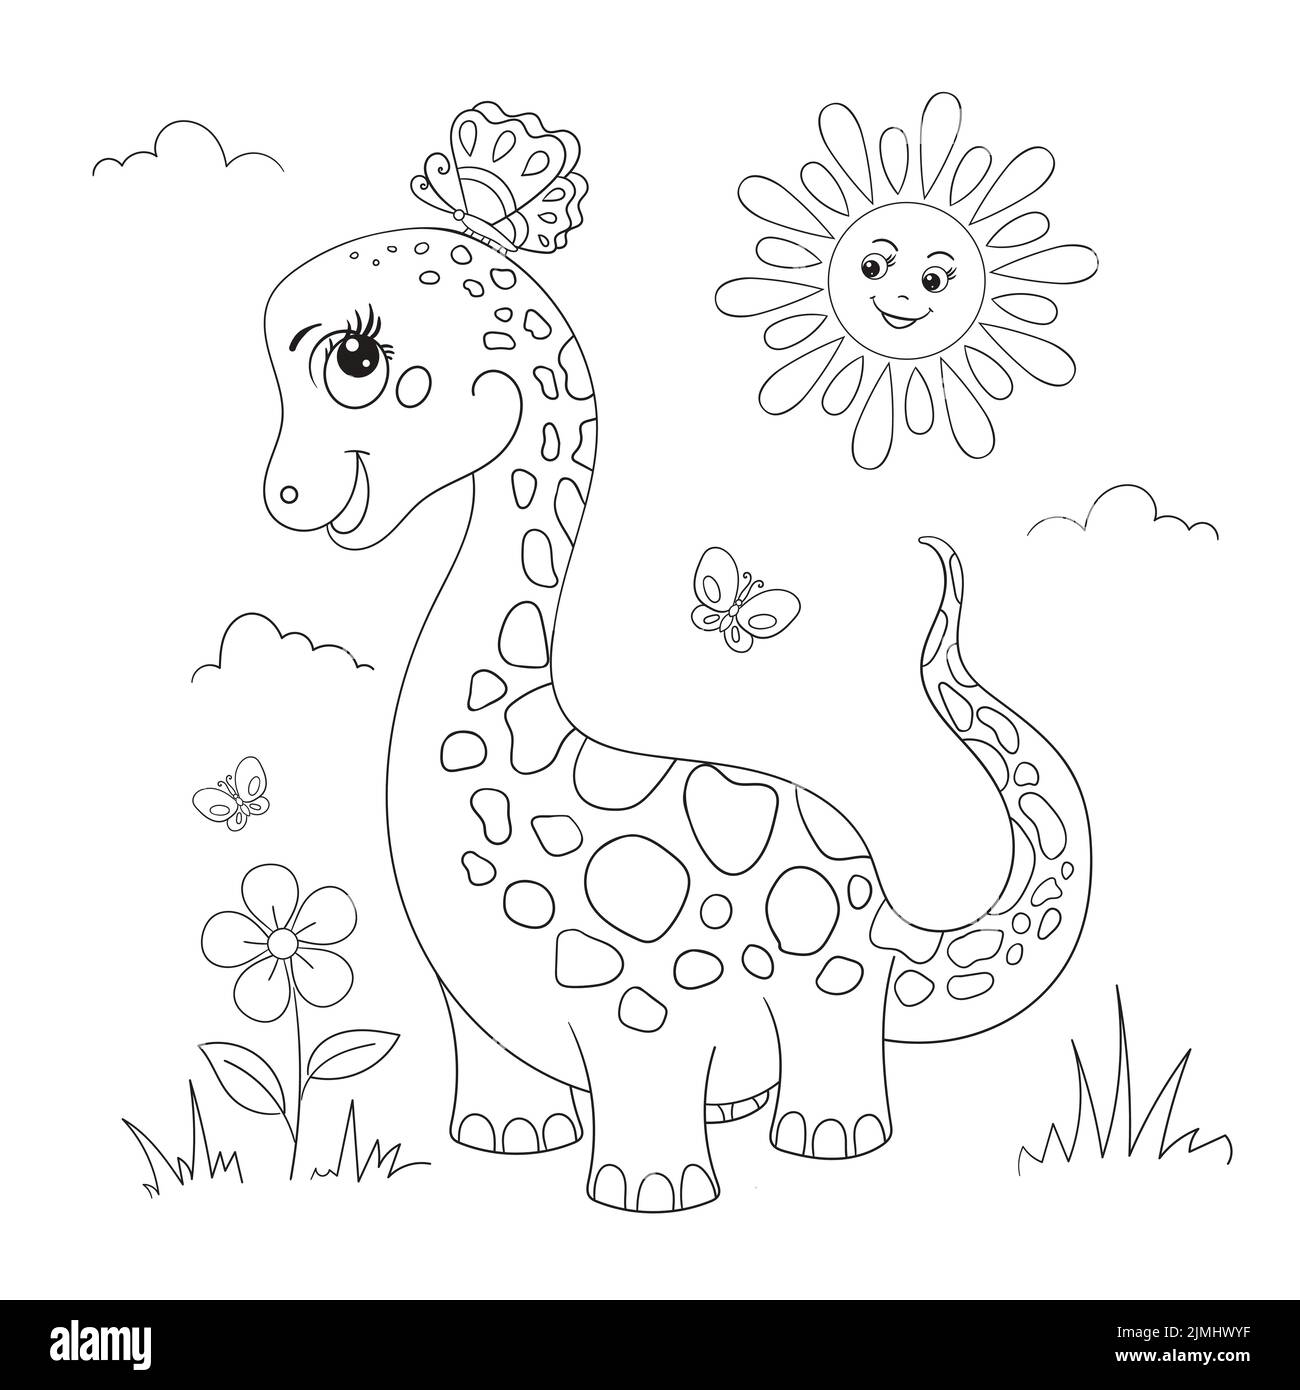 Niedliche Cartoon-Dinosaurier mit einem Schmetterling. Lineares Schwarzweißbild. Für Kinder Stock Vektor